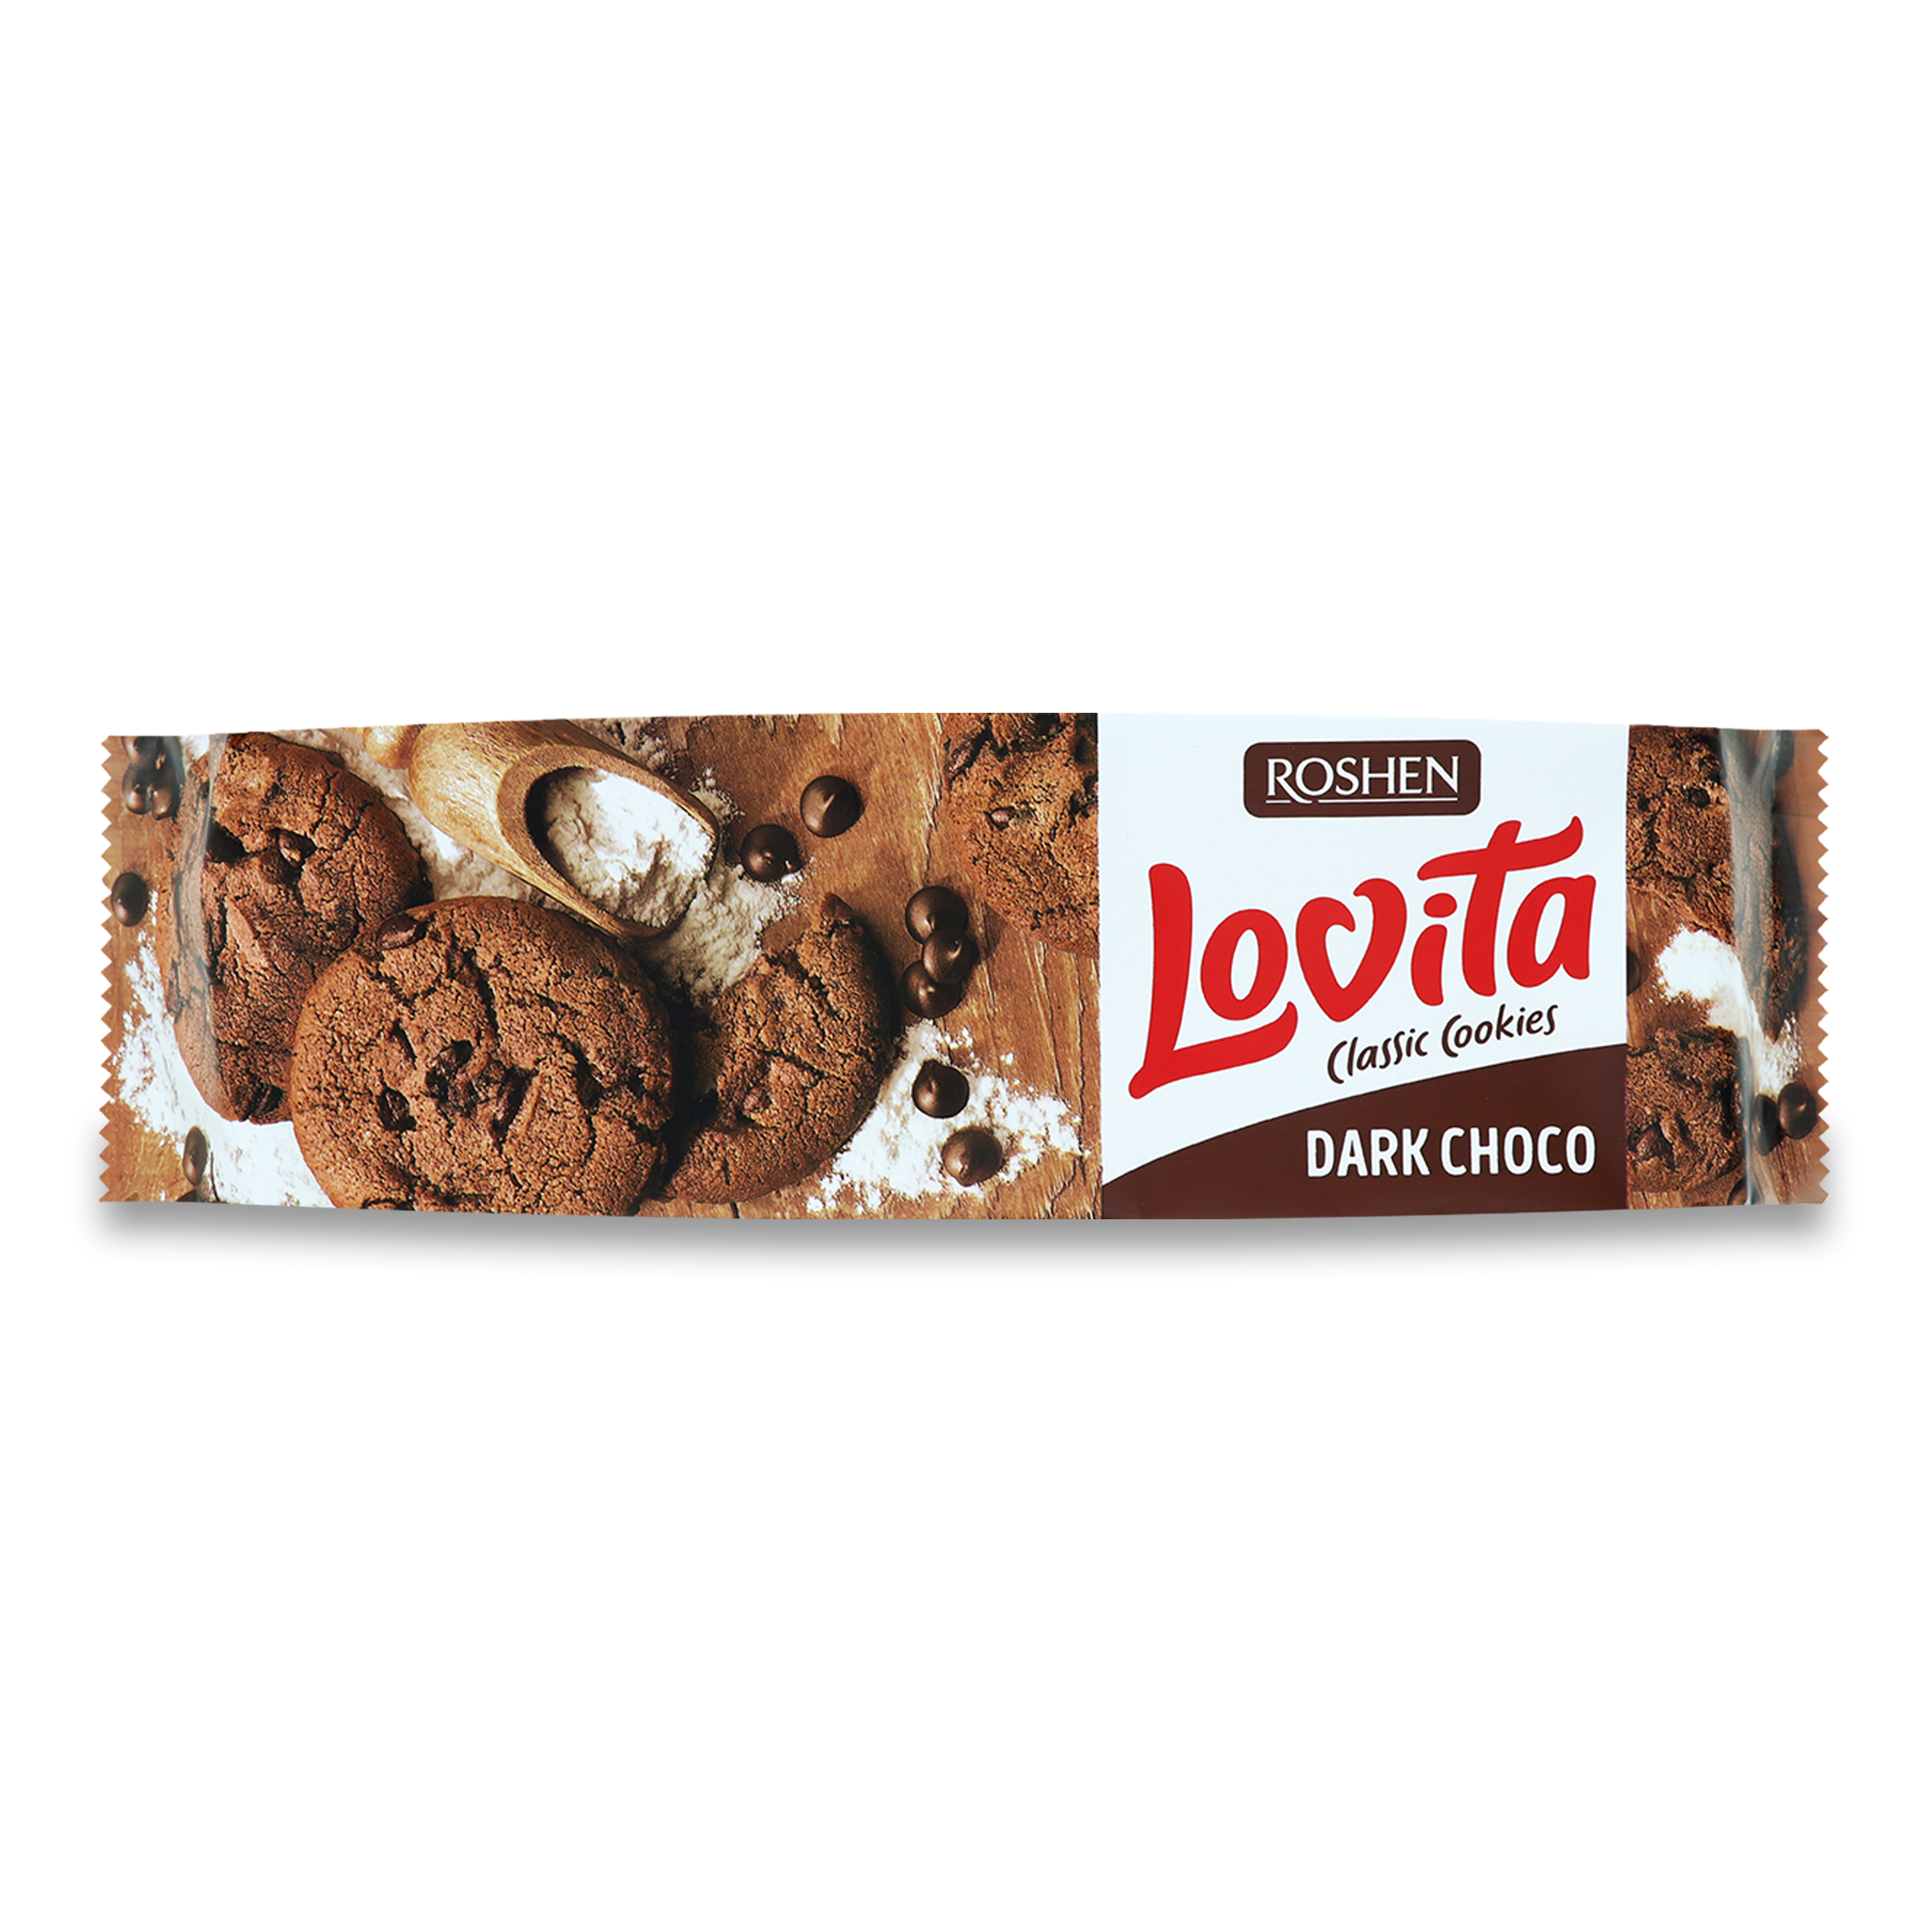 Roshen Lovita Chocolate Cookies with Chocolate Chunks 150g